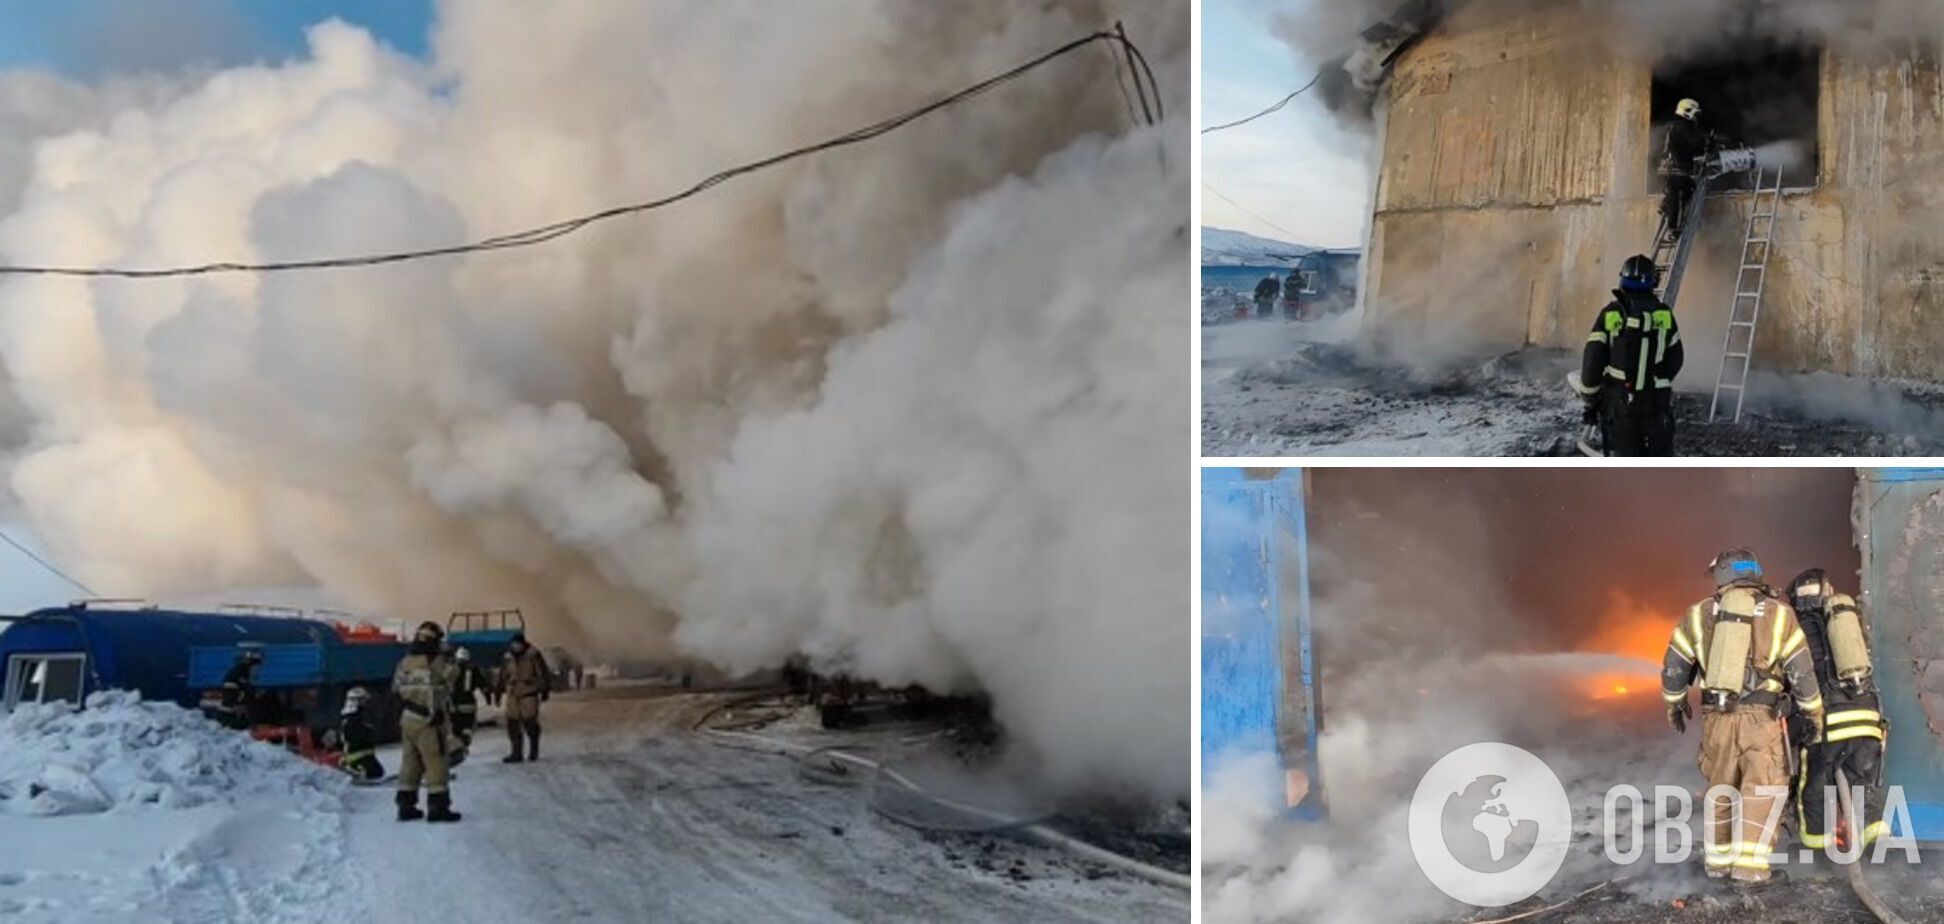 У російському Магадані трапилася потужна пожежа: згорів склад із вантажною технікою. Фото і відео